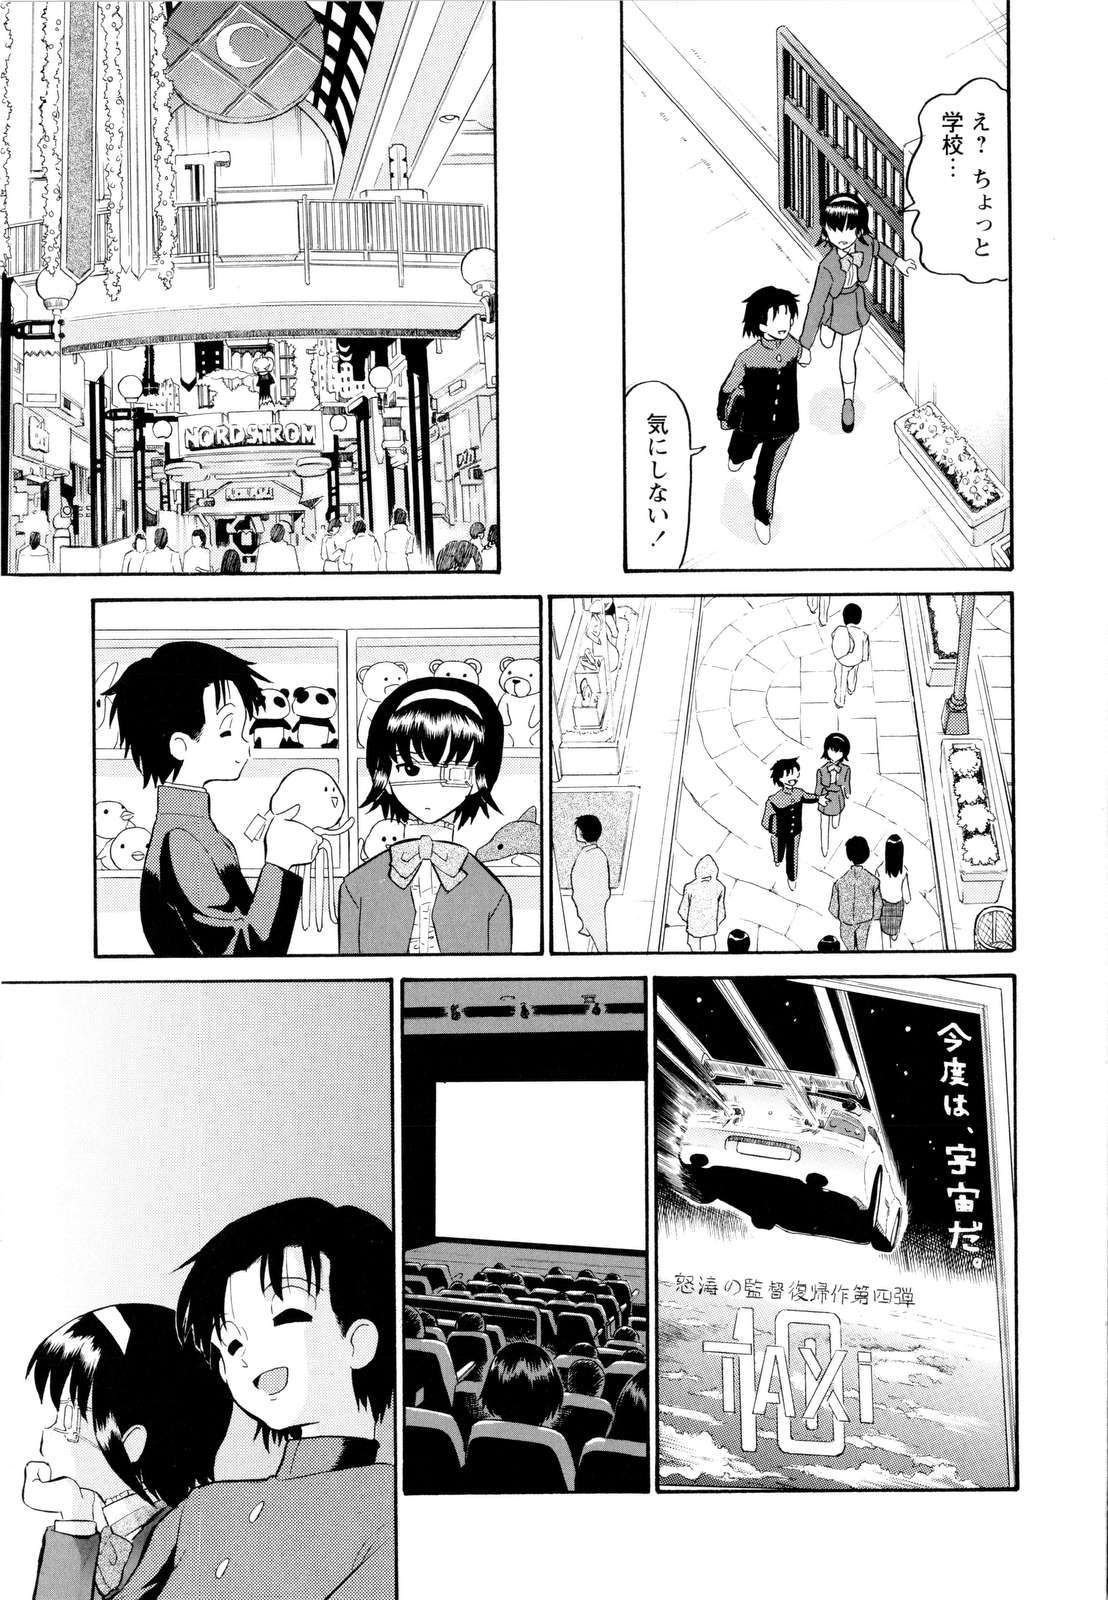 [Dozamura] Haruka 69 Vol.2 page 16 full